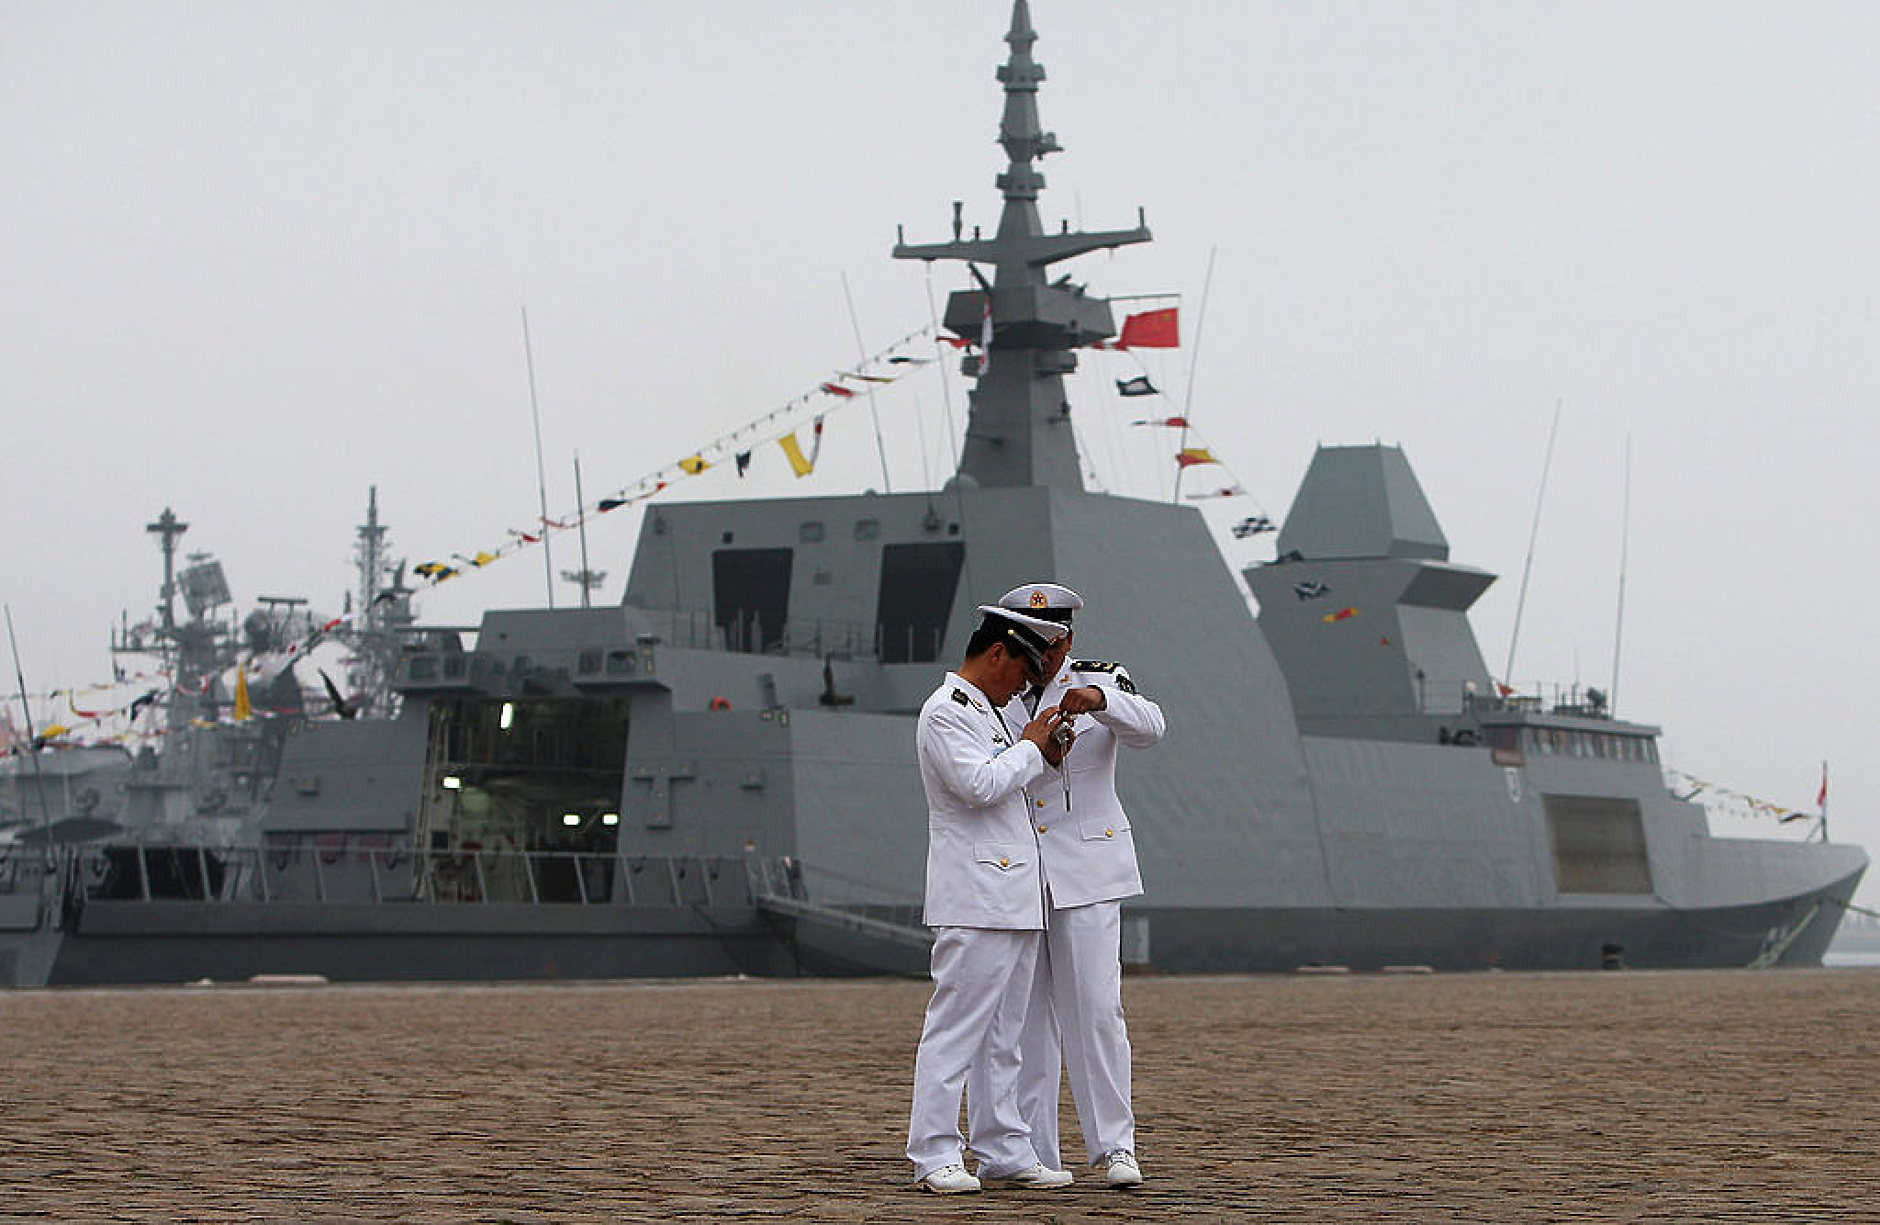 Пекин обяви, че ще извърши бойни патрули в спорното Южнокитайско море